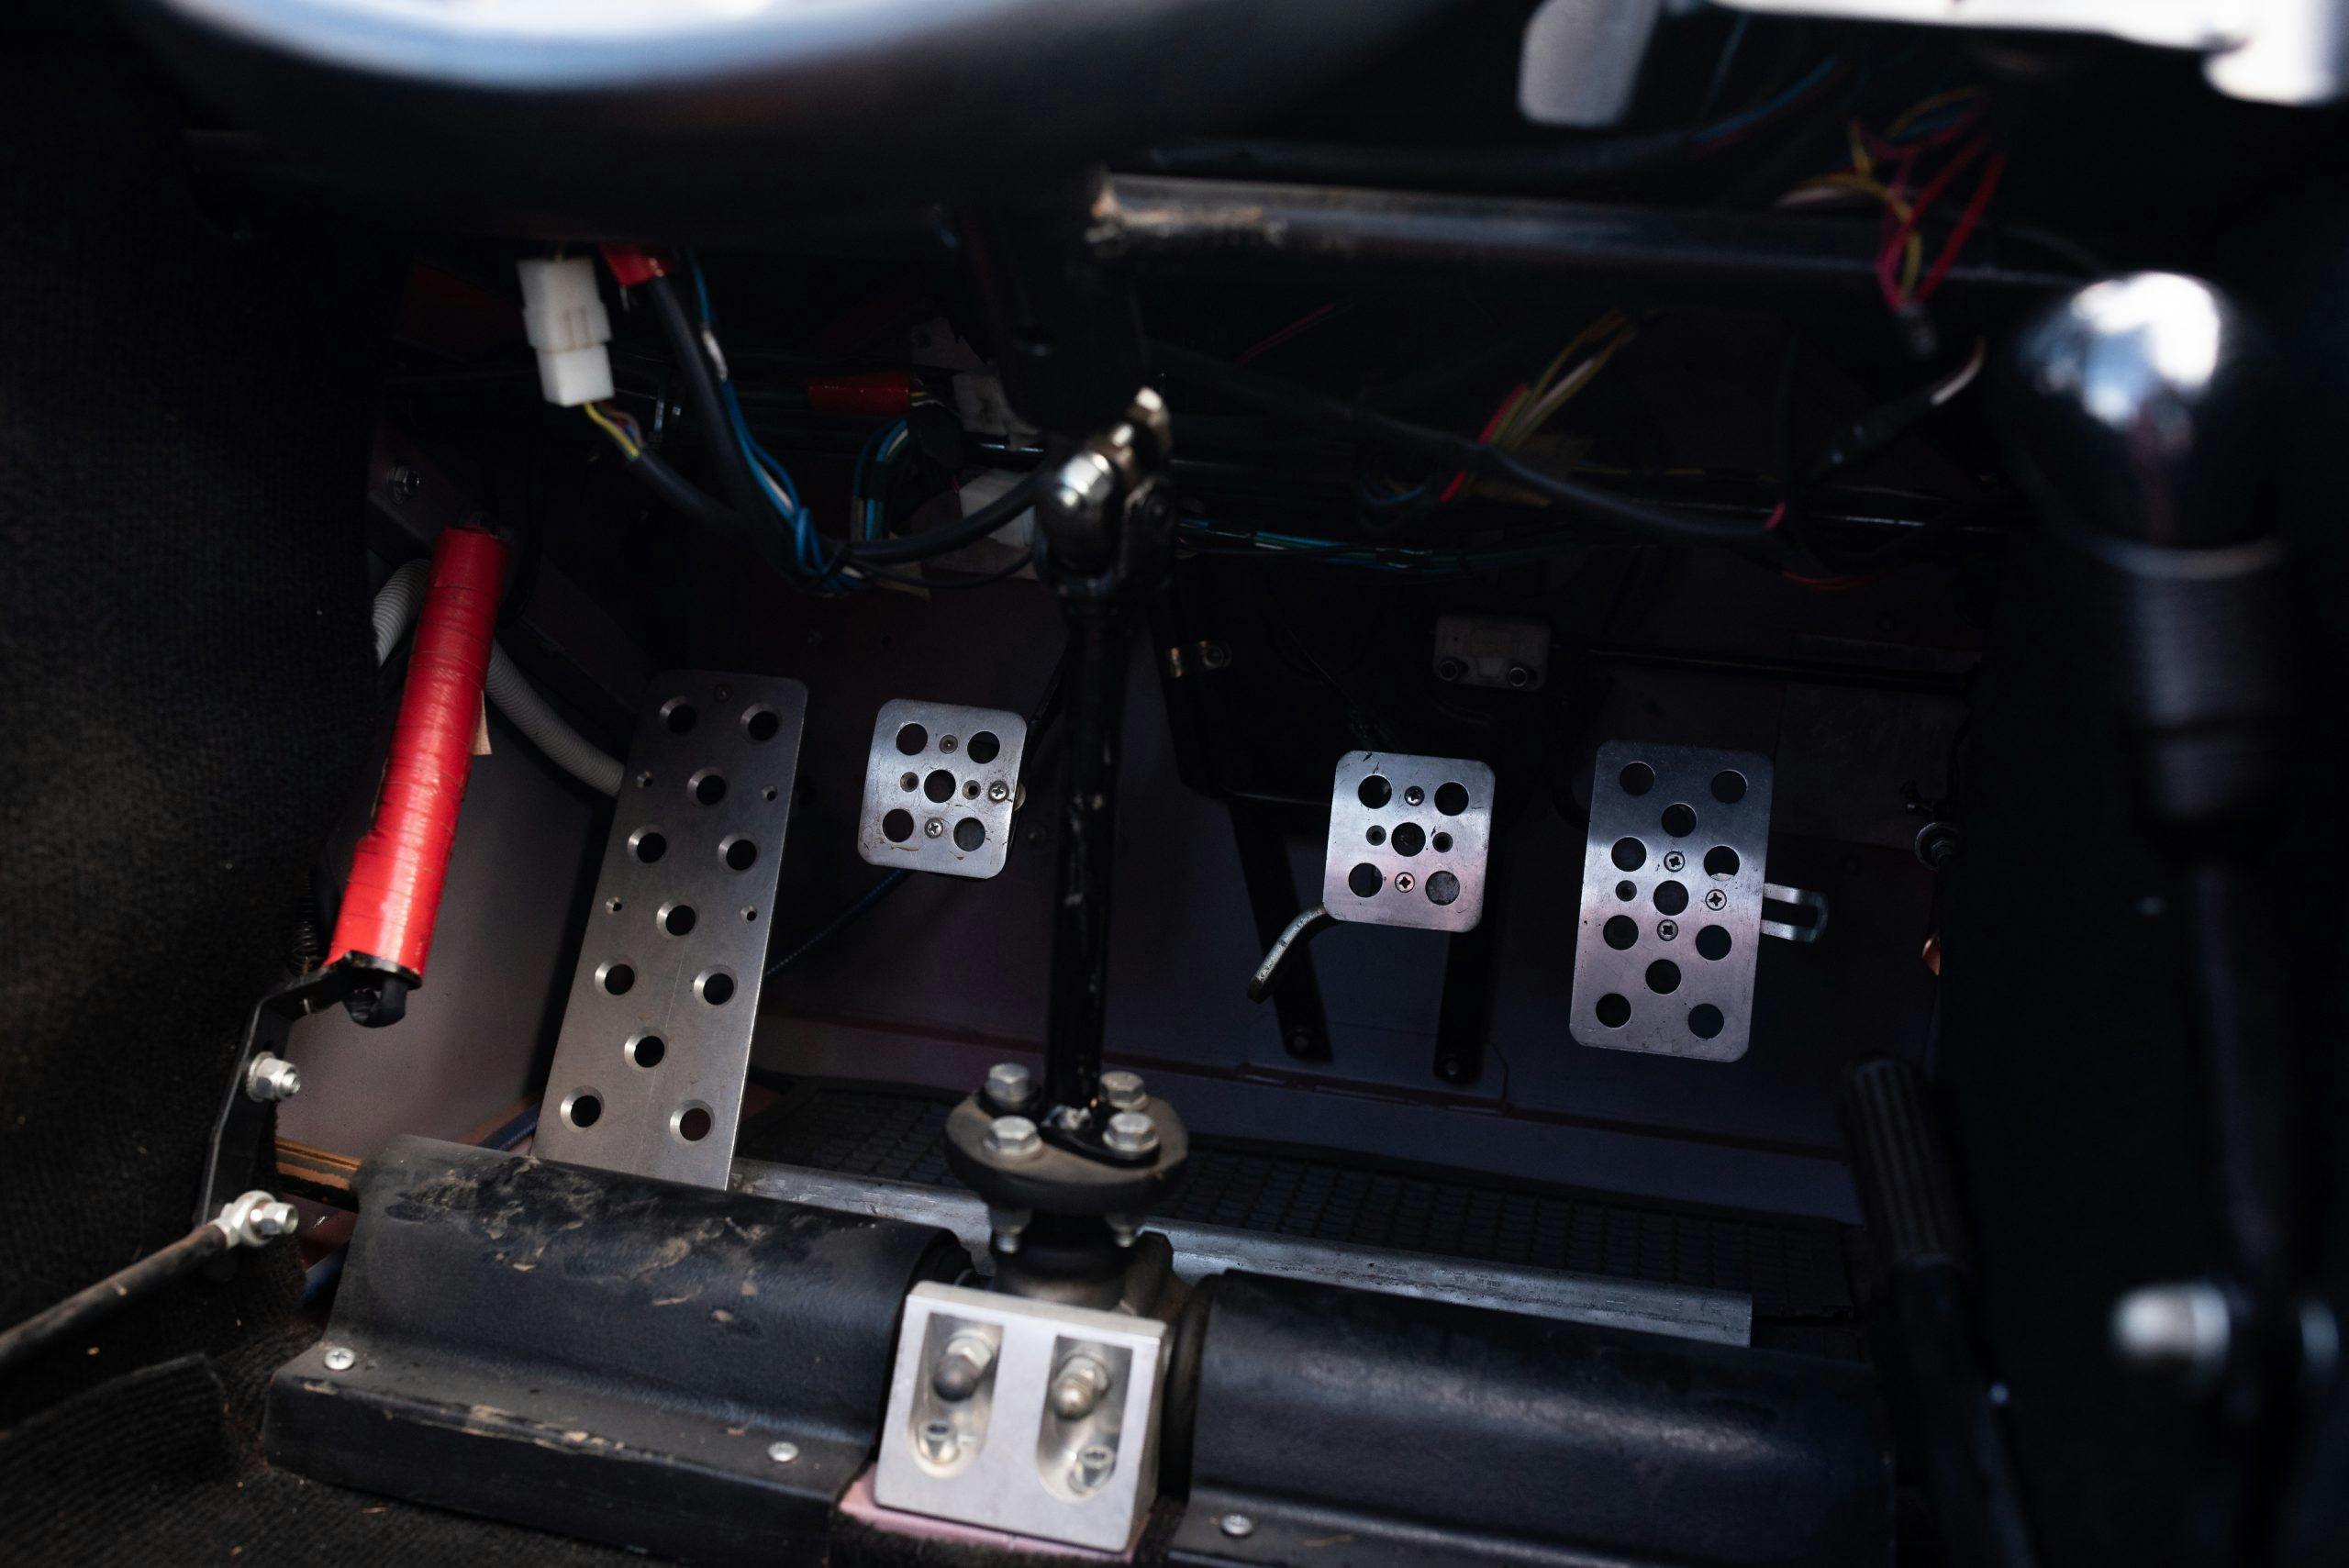 1990 iC Modulo M89 interior pedals